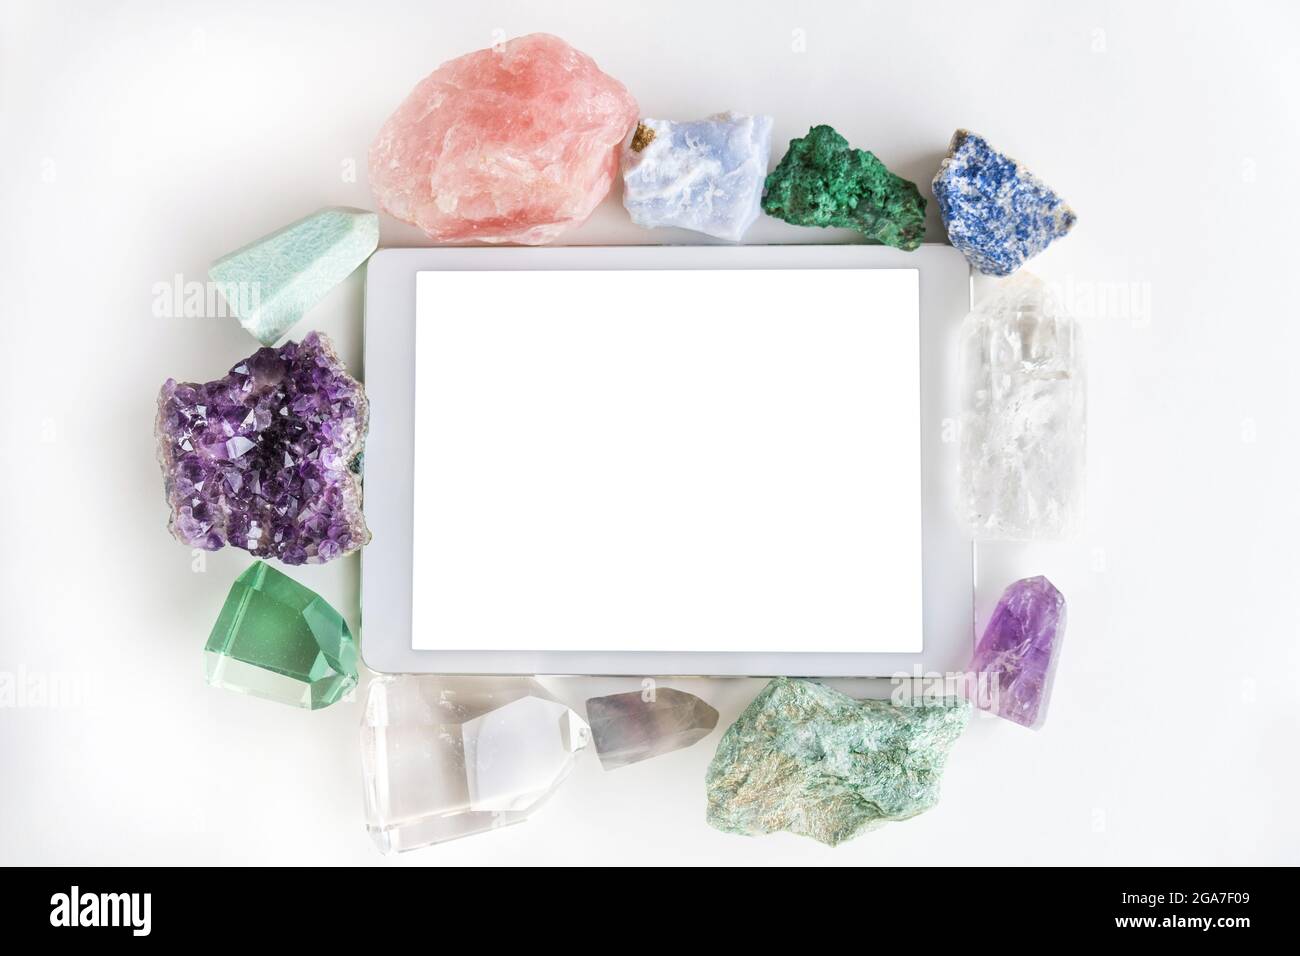 Touchpad bianco con touchscreen vuoto incorniciato da cristalli e gemme su sfondo bianco con spazio vuoto. Disposizione piatta della cornice con colori colorati Foto Stock